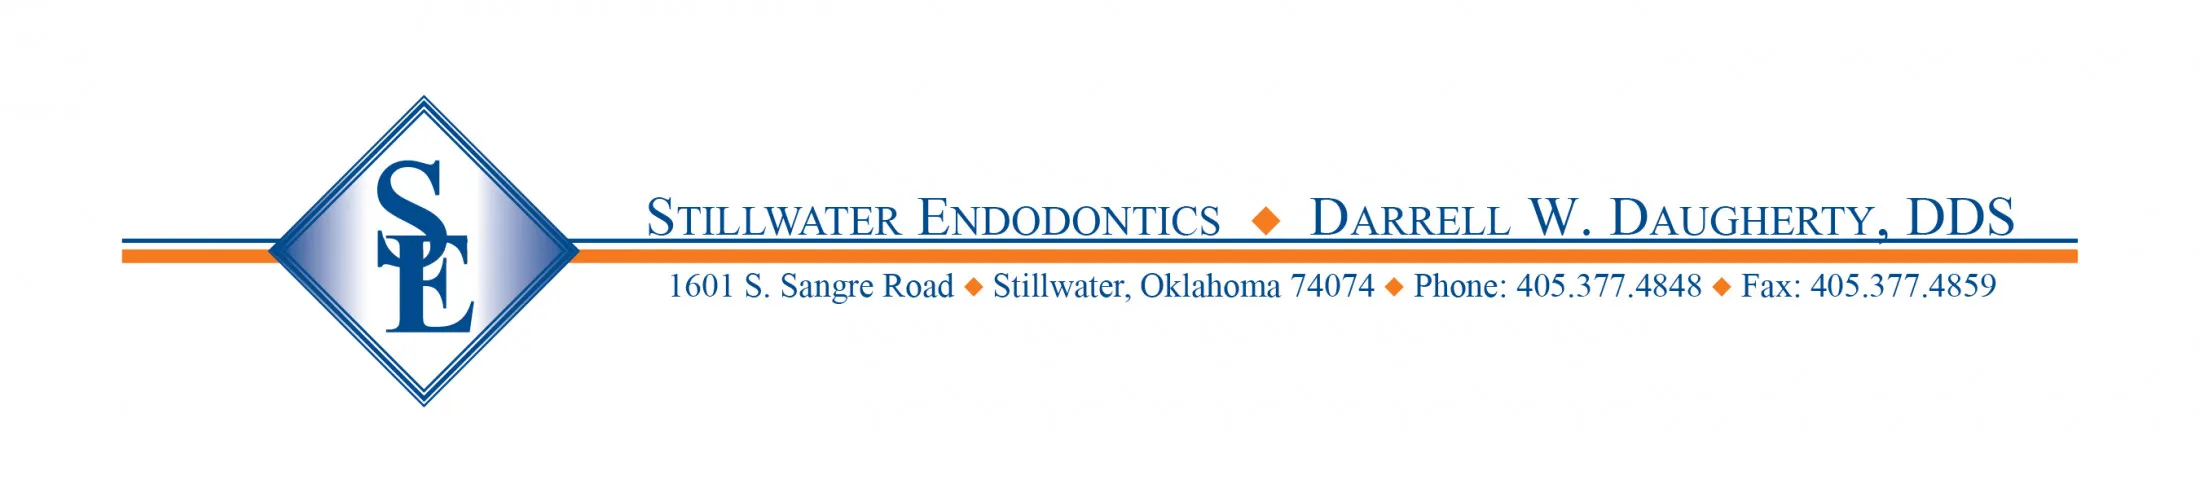 Stillwater Endodontics